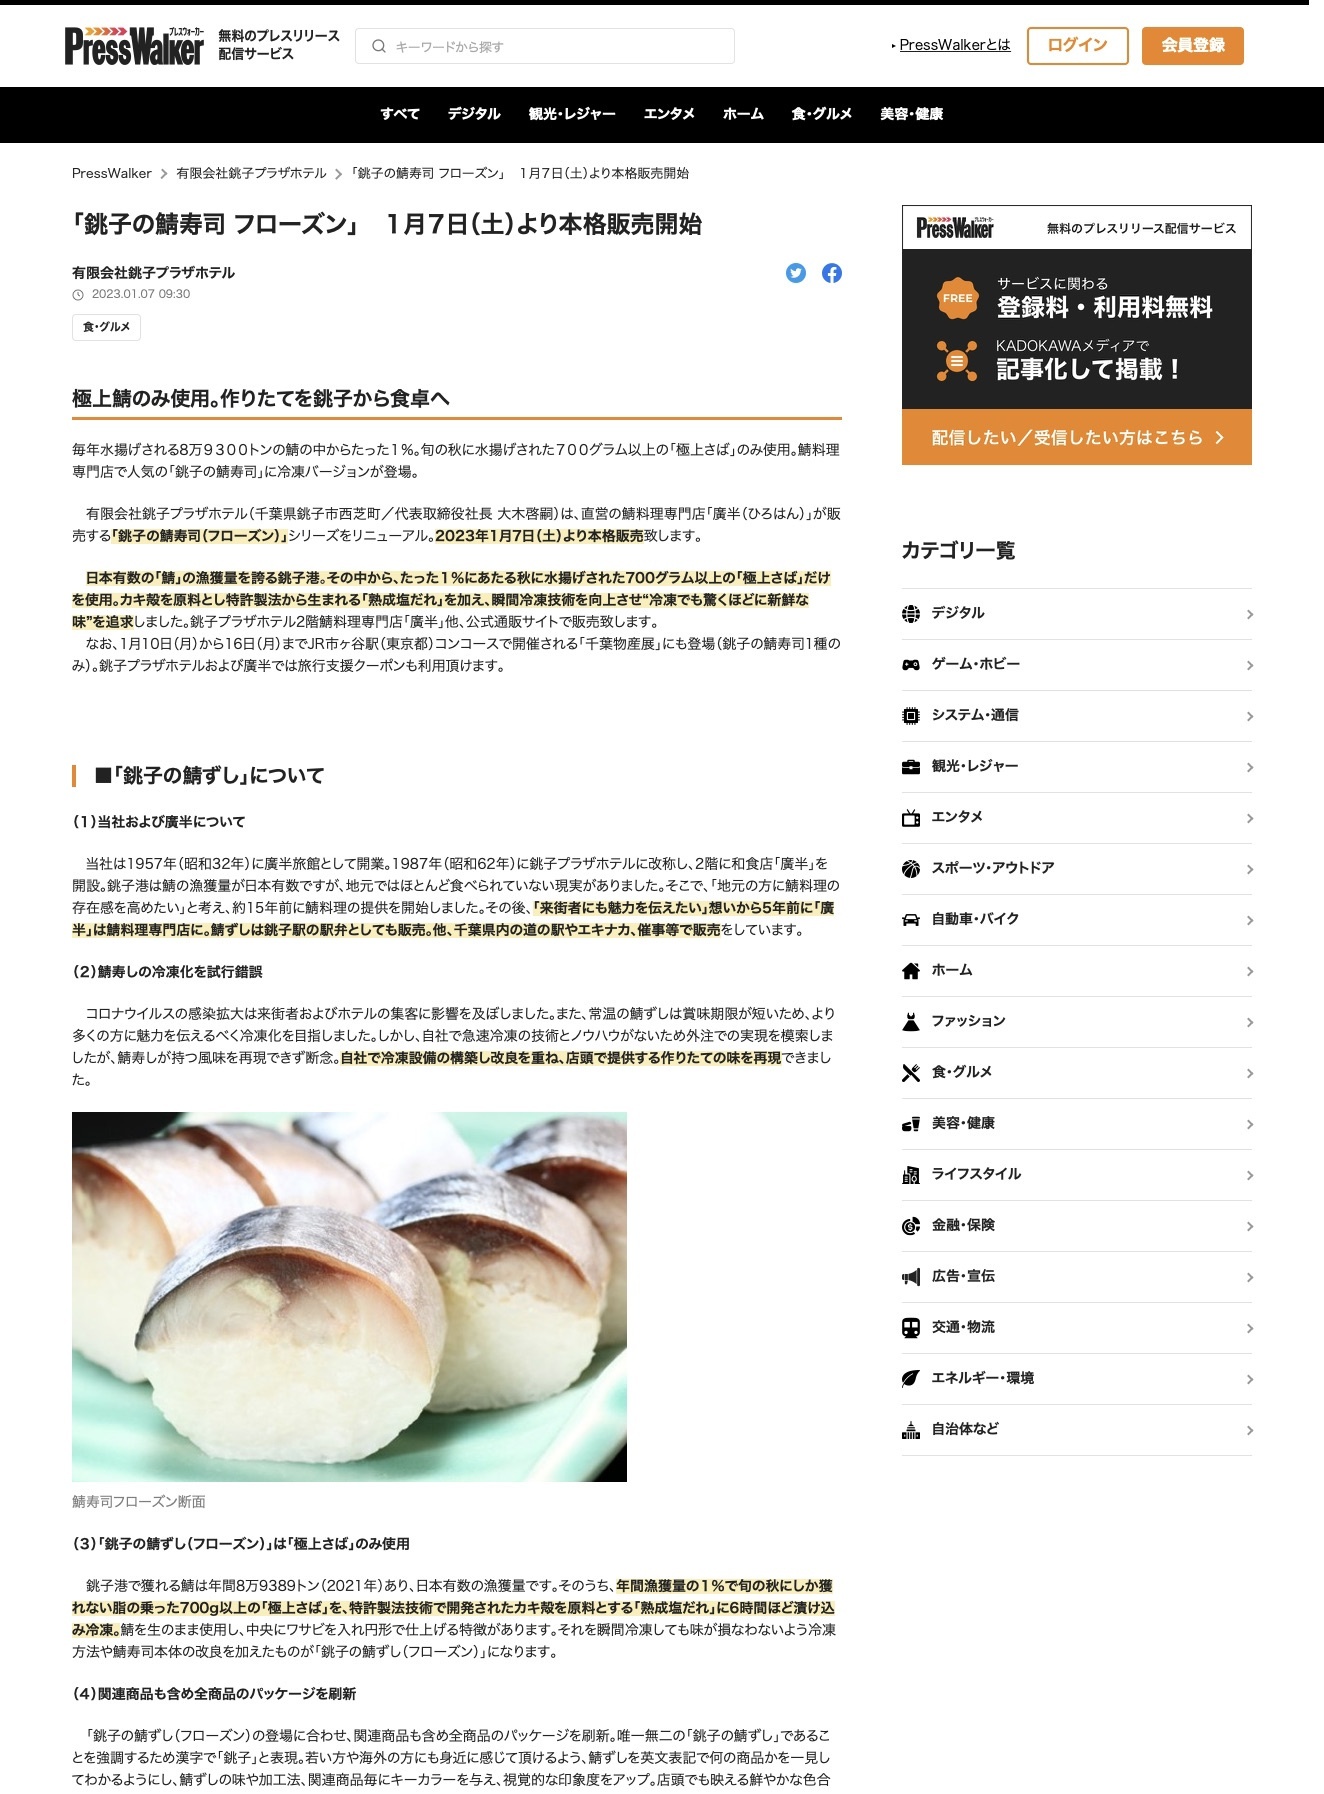 「銚子の鯖寿司 フローズン」1月7日(土)より本格販売開始｜PressWalker